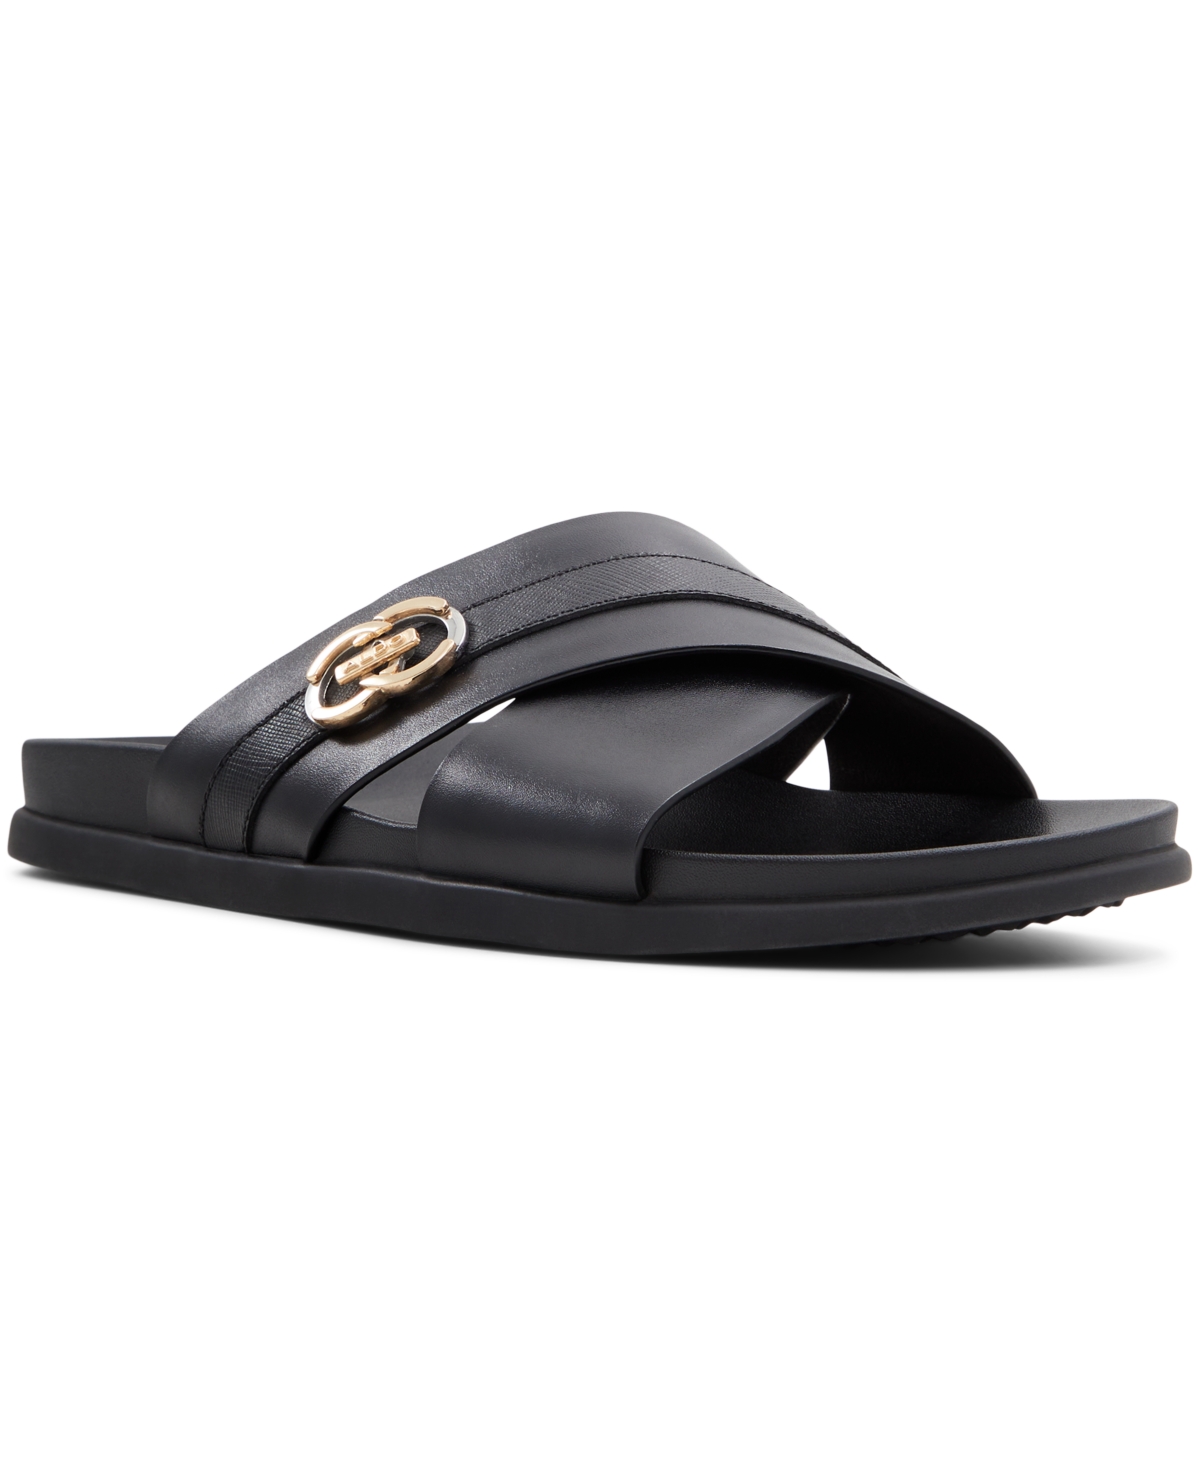 Men's Delmar Flat Sandals - Black